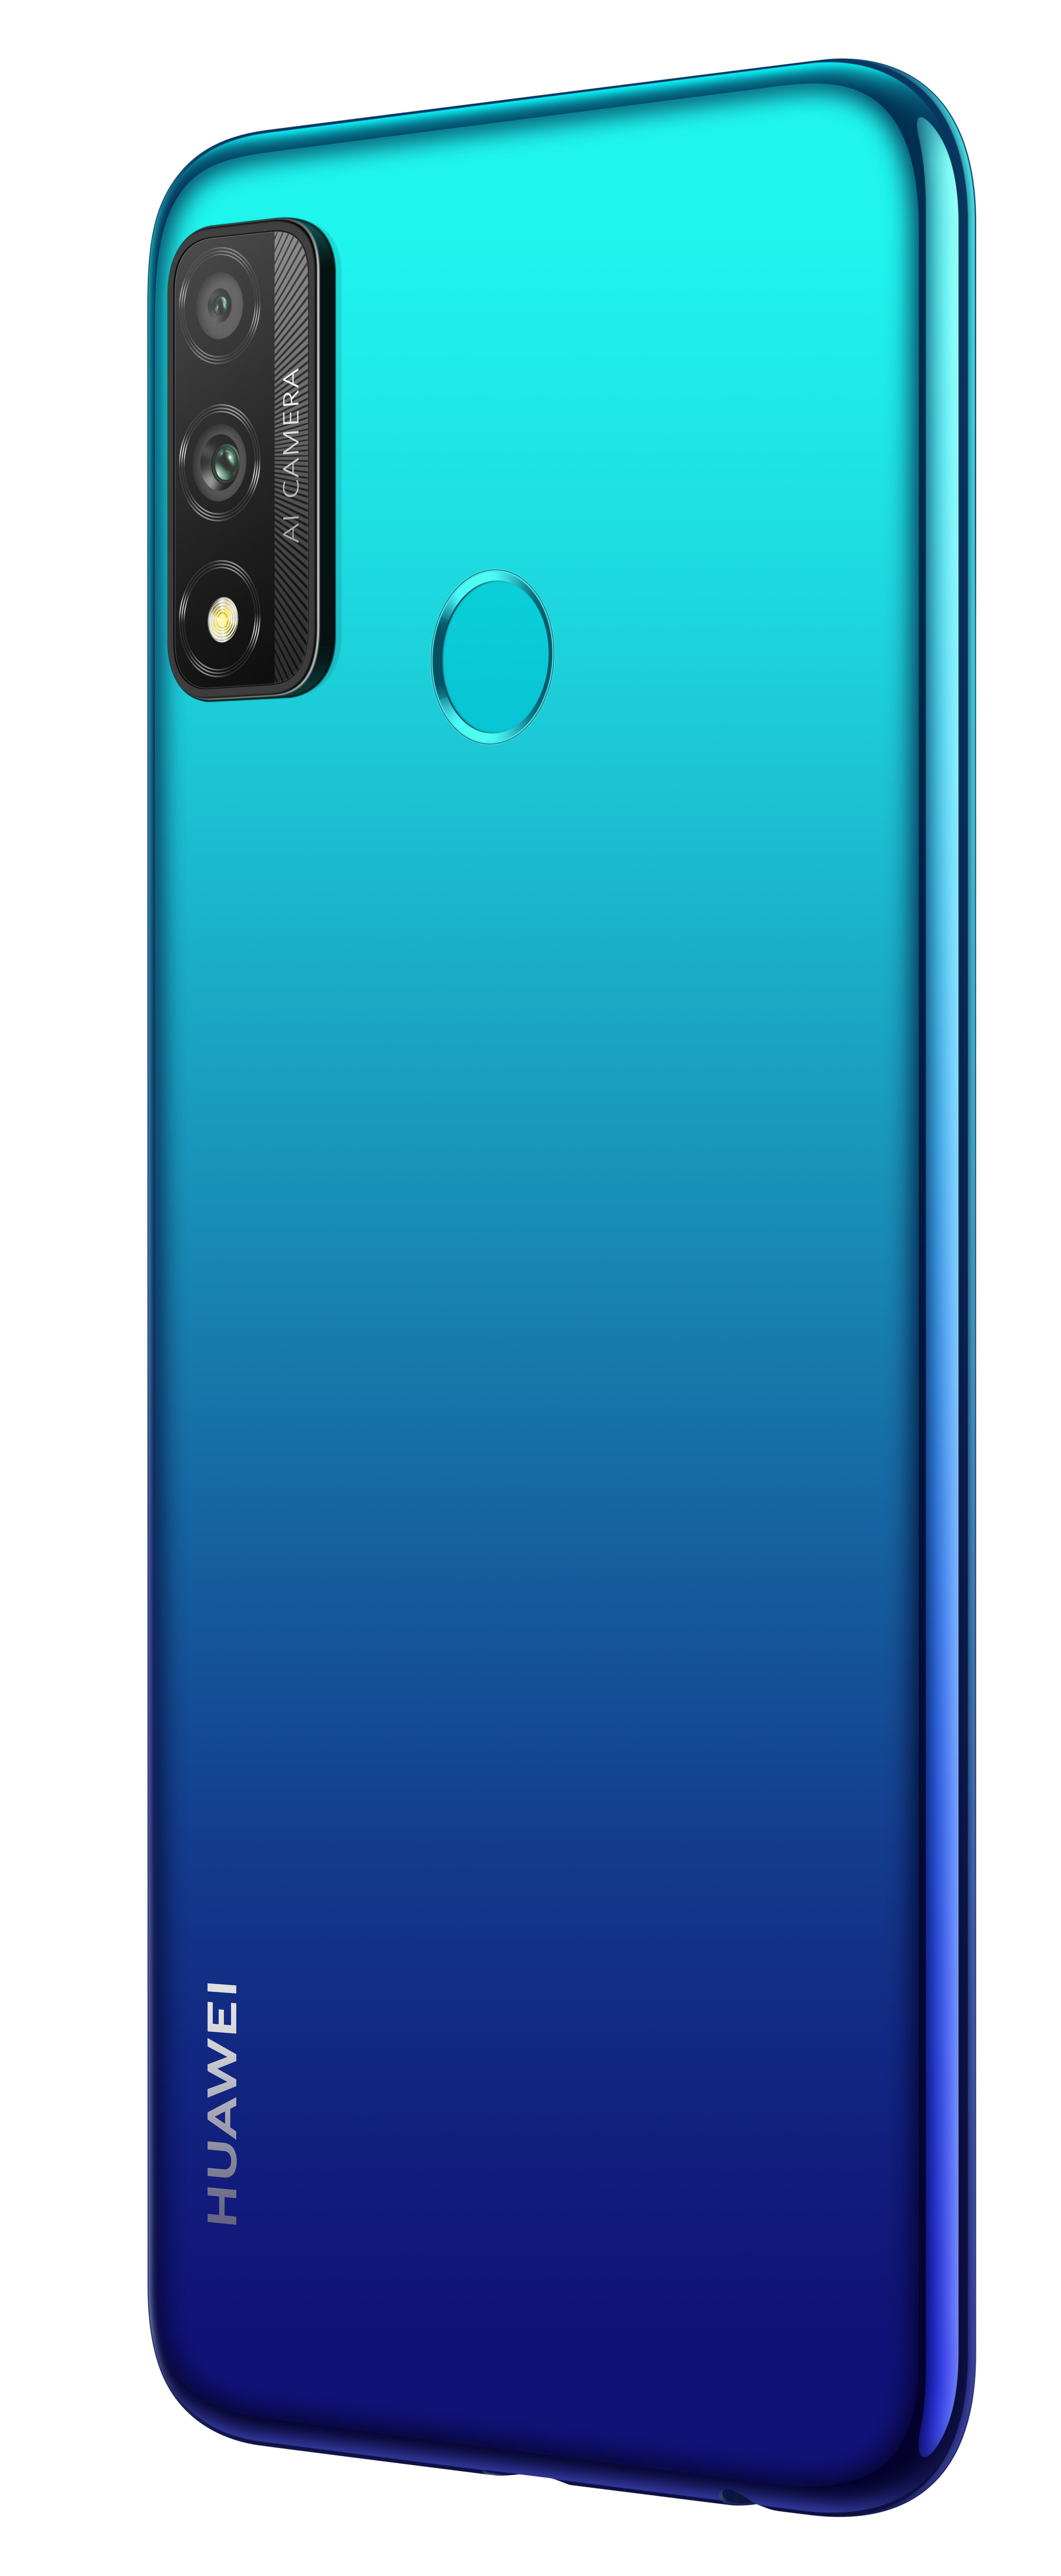 HUAWEI P smart 2020 128 GB Dual SIM Aurora Blue